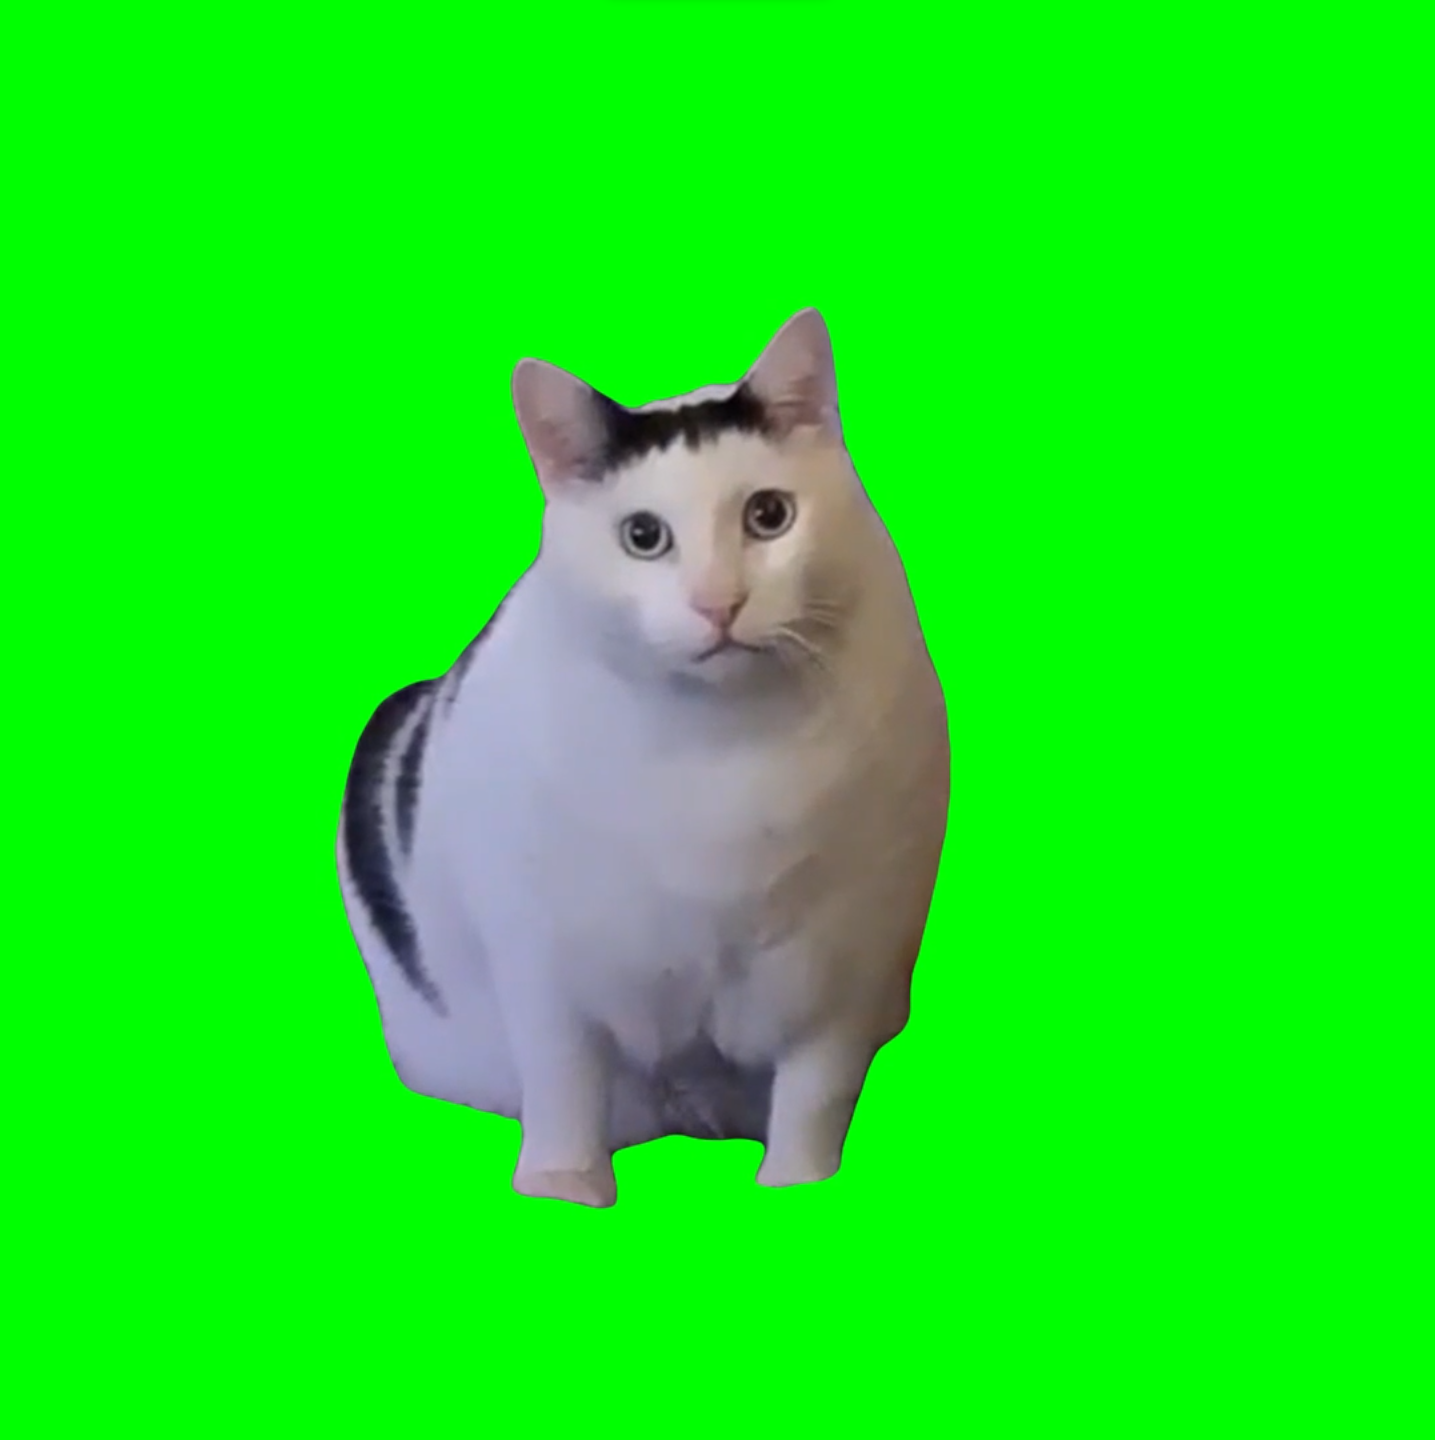 Huh? Cat meme (Green Screen)